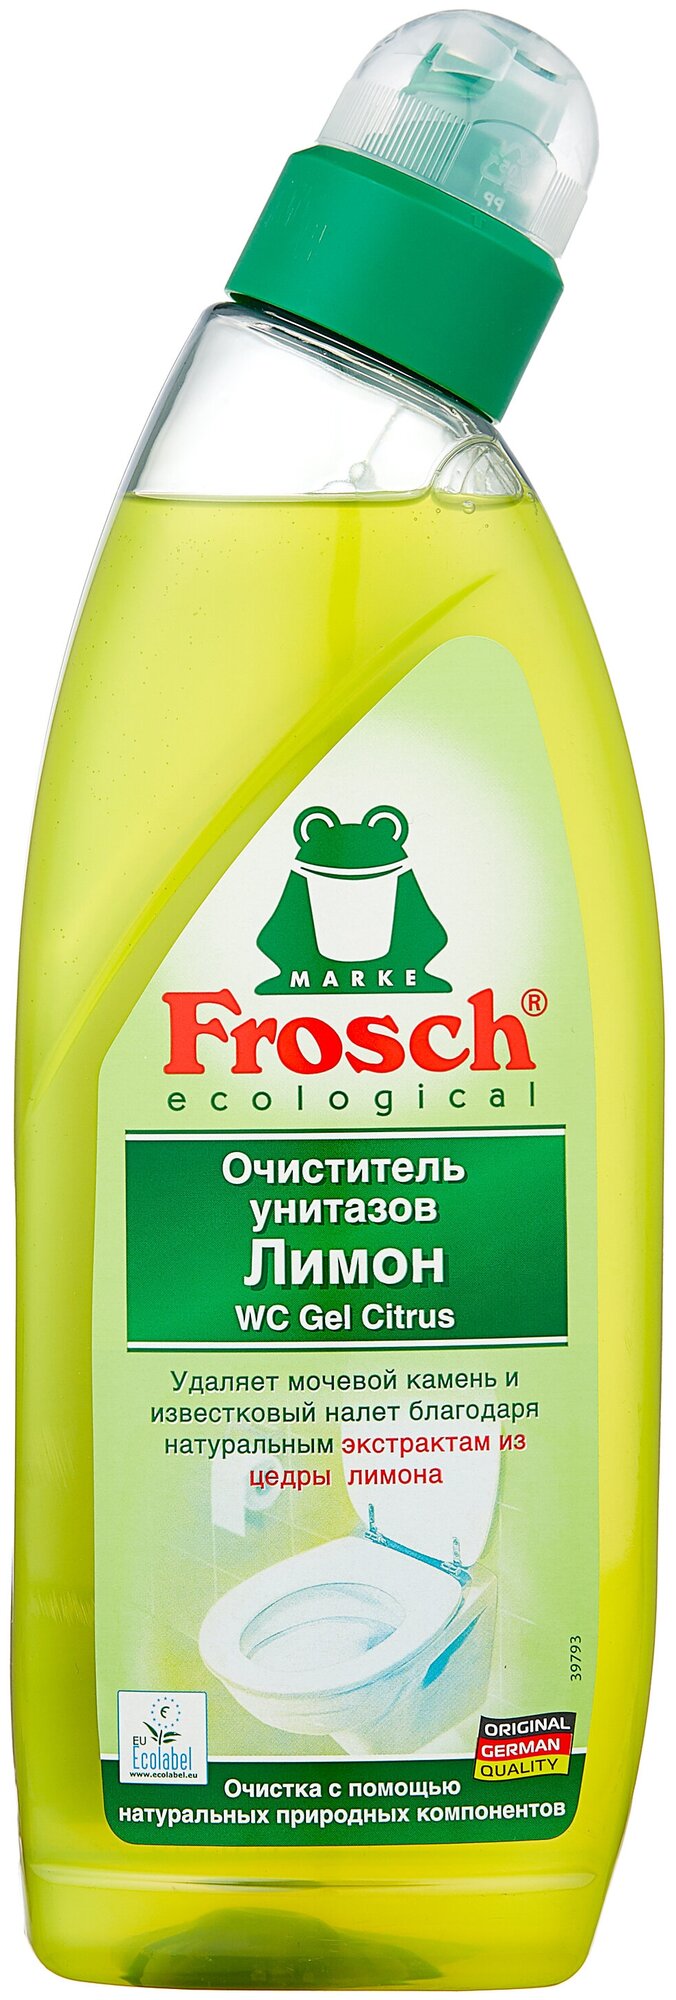 Frosch Очиститель унитазов Лимон, 0,75 л.